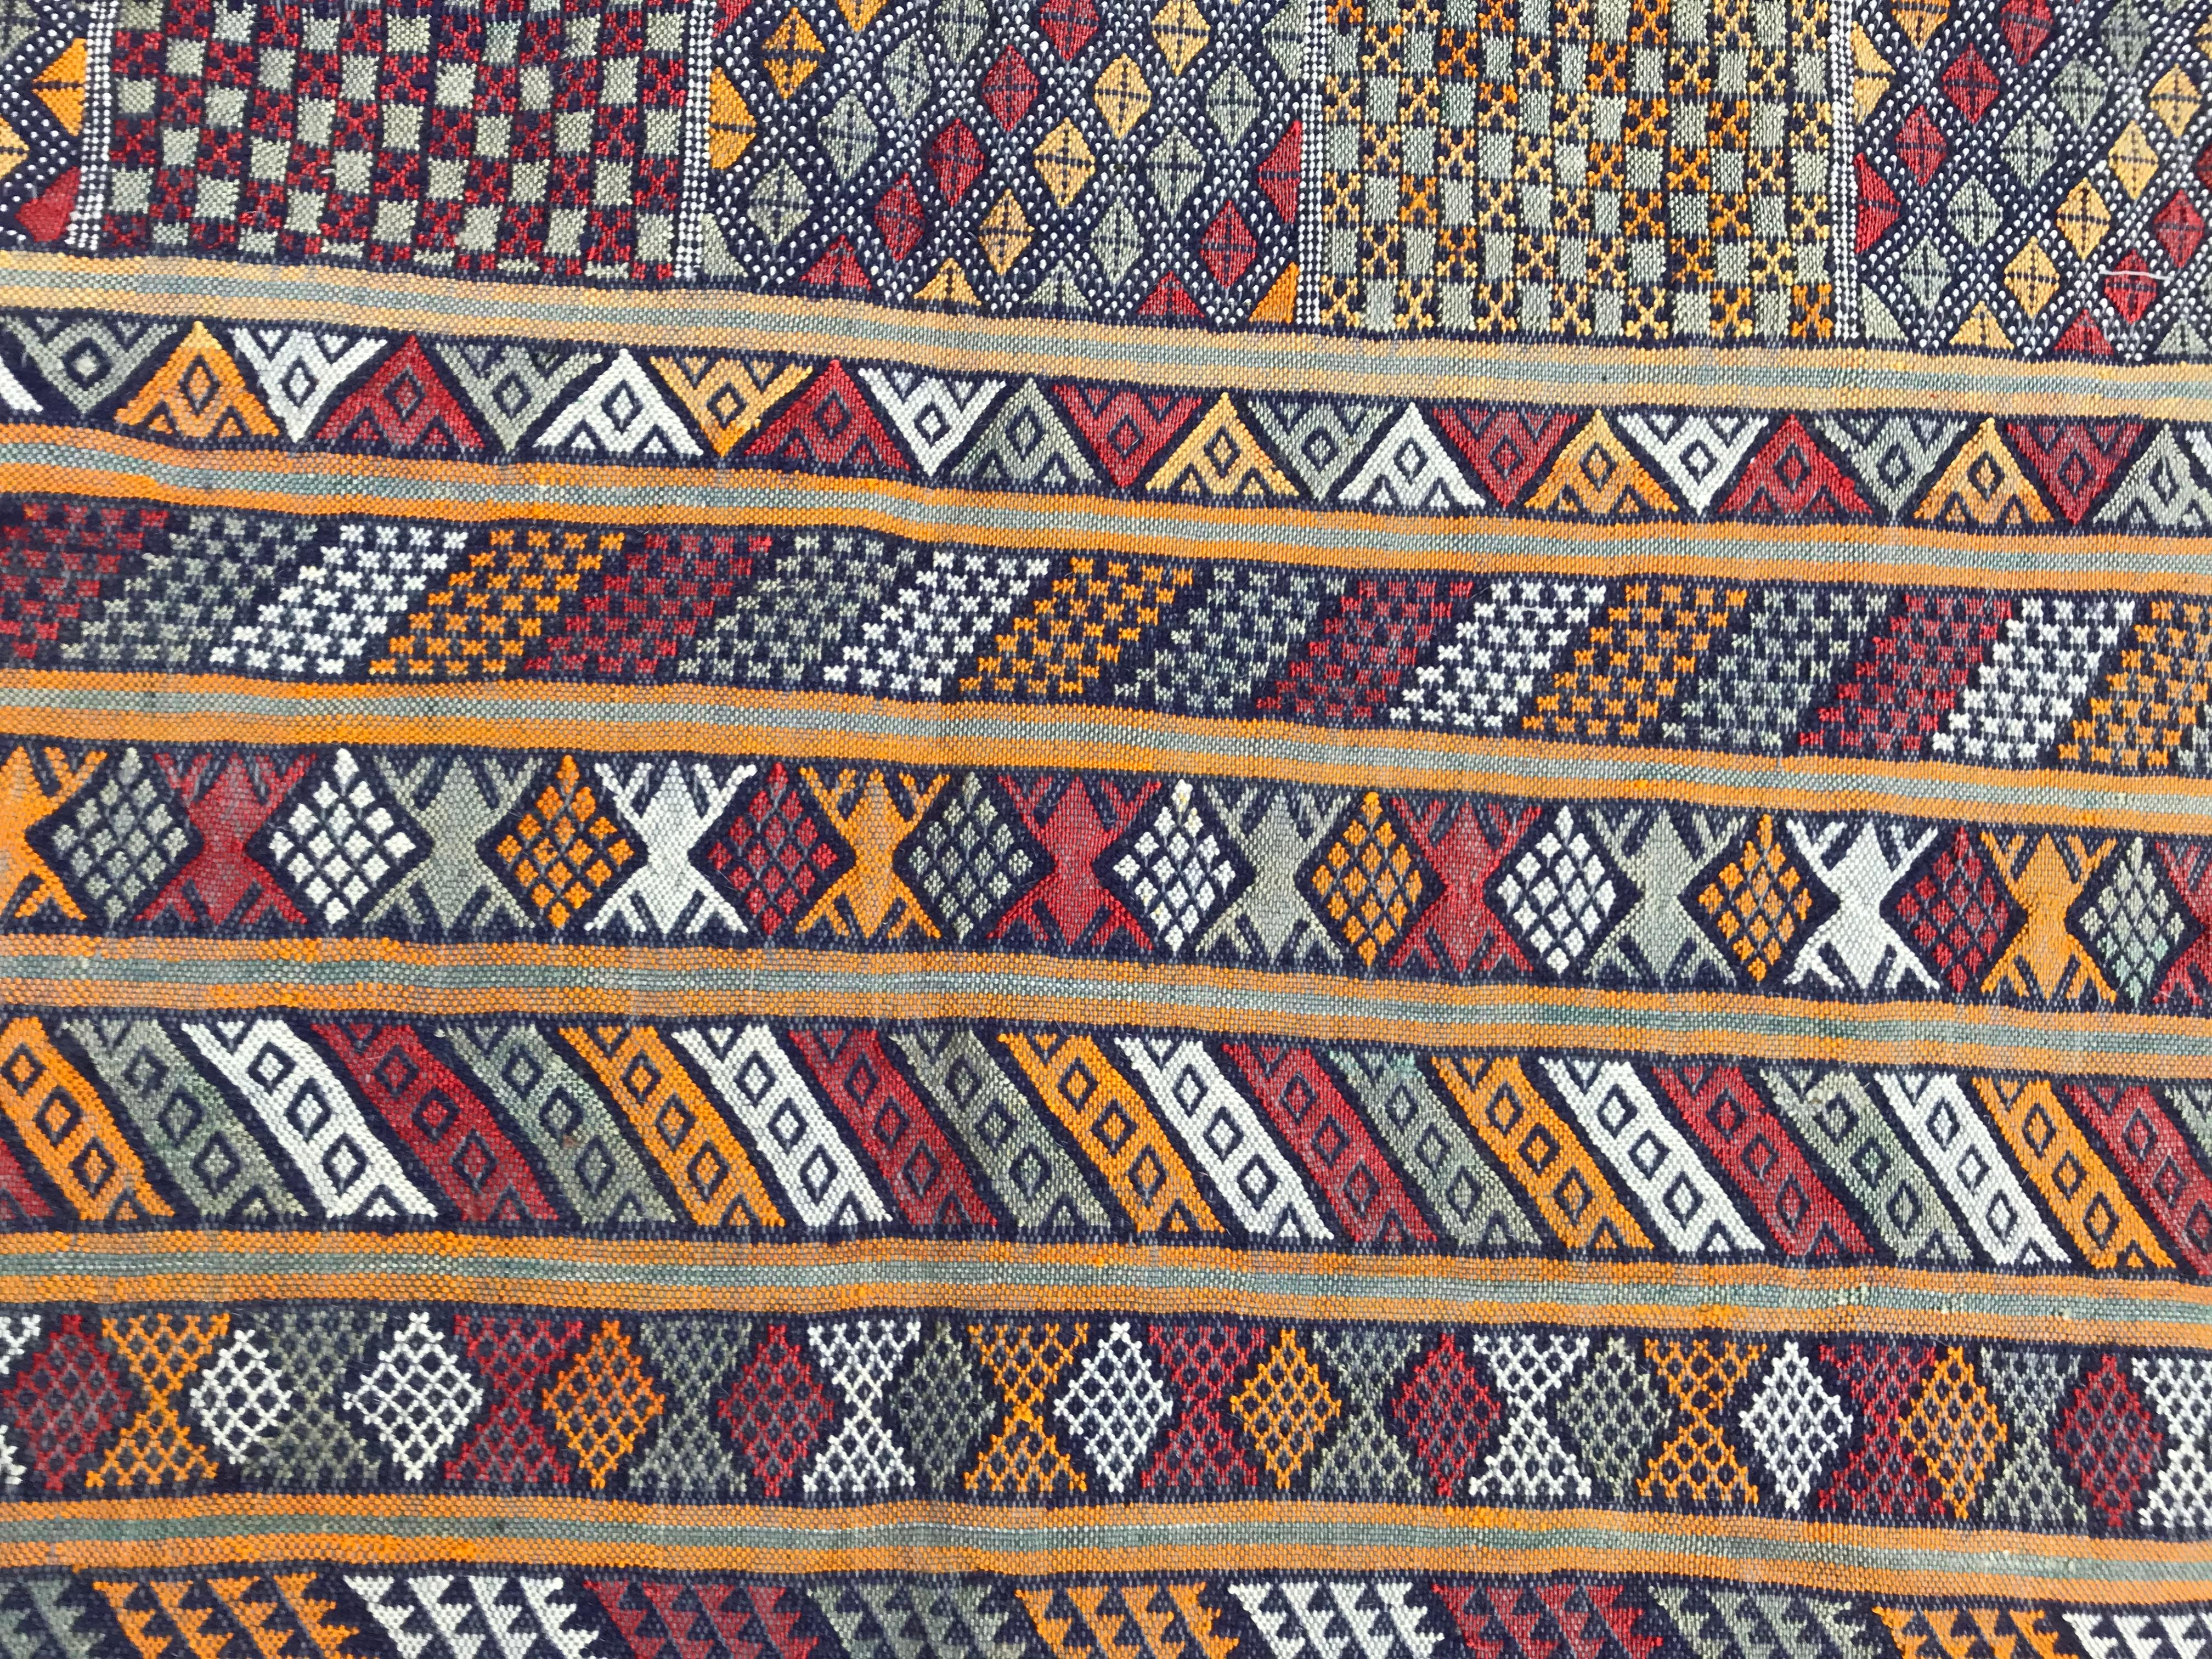 Hand-Woven Nice Vintage Flat Silk Woven Moroccan Kilim Rug